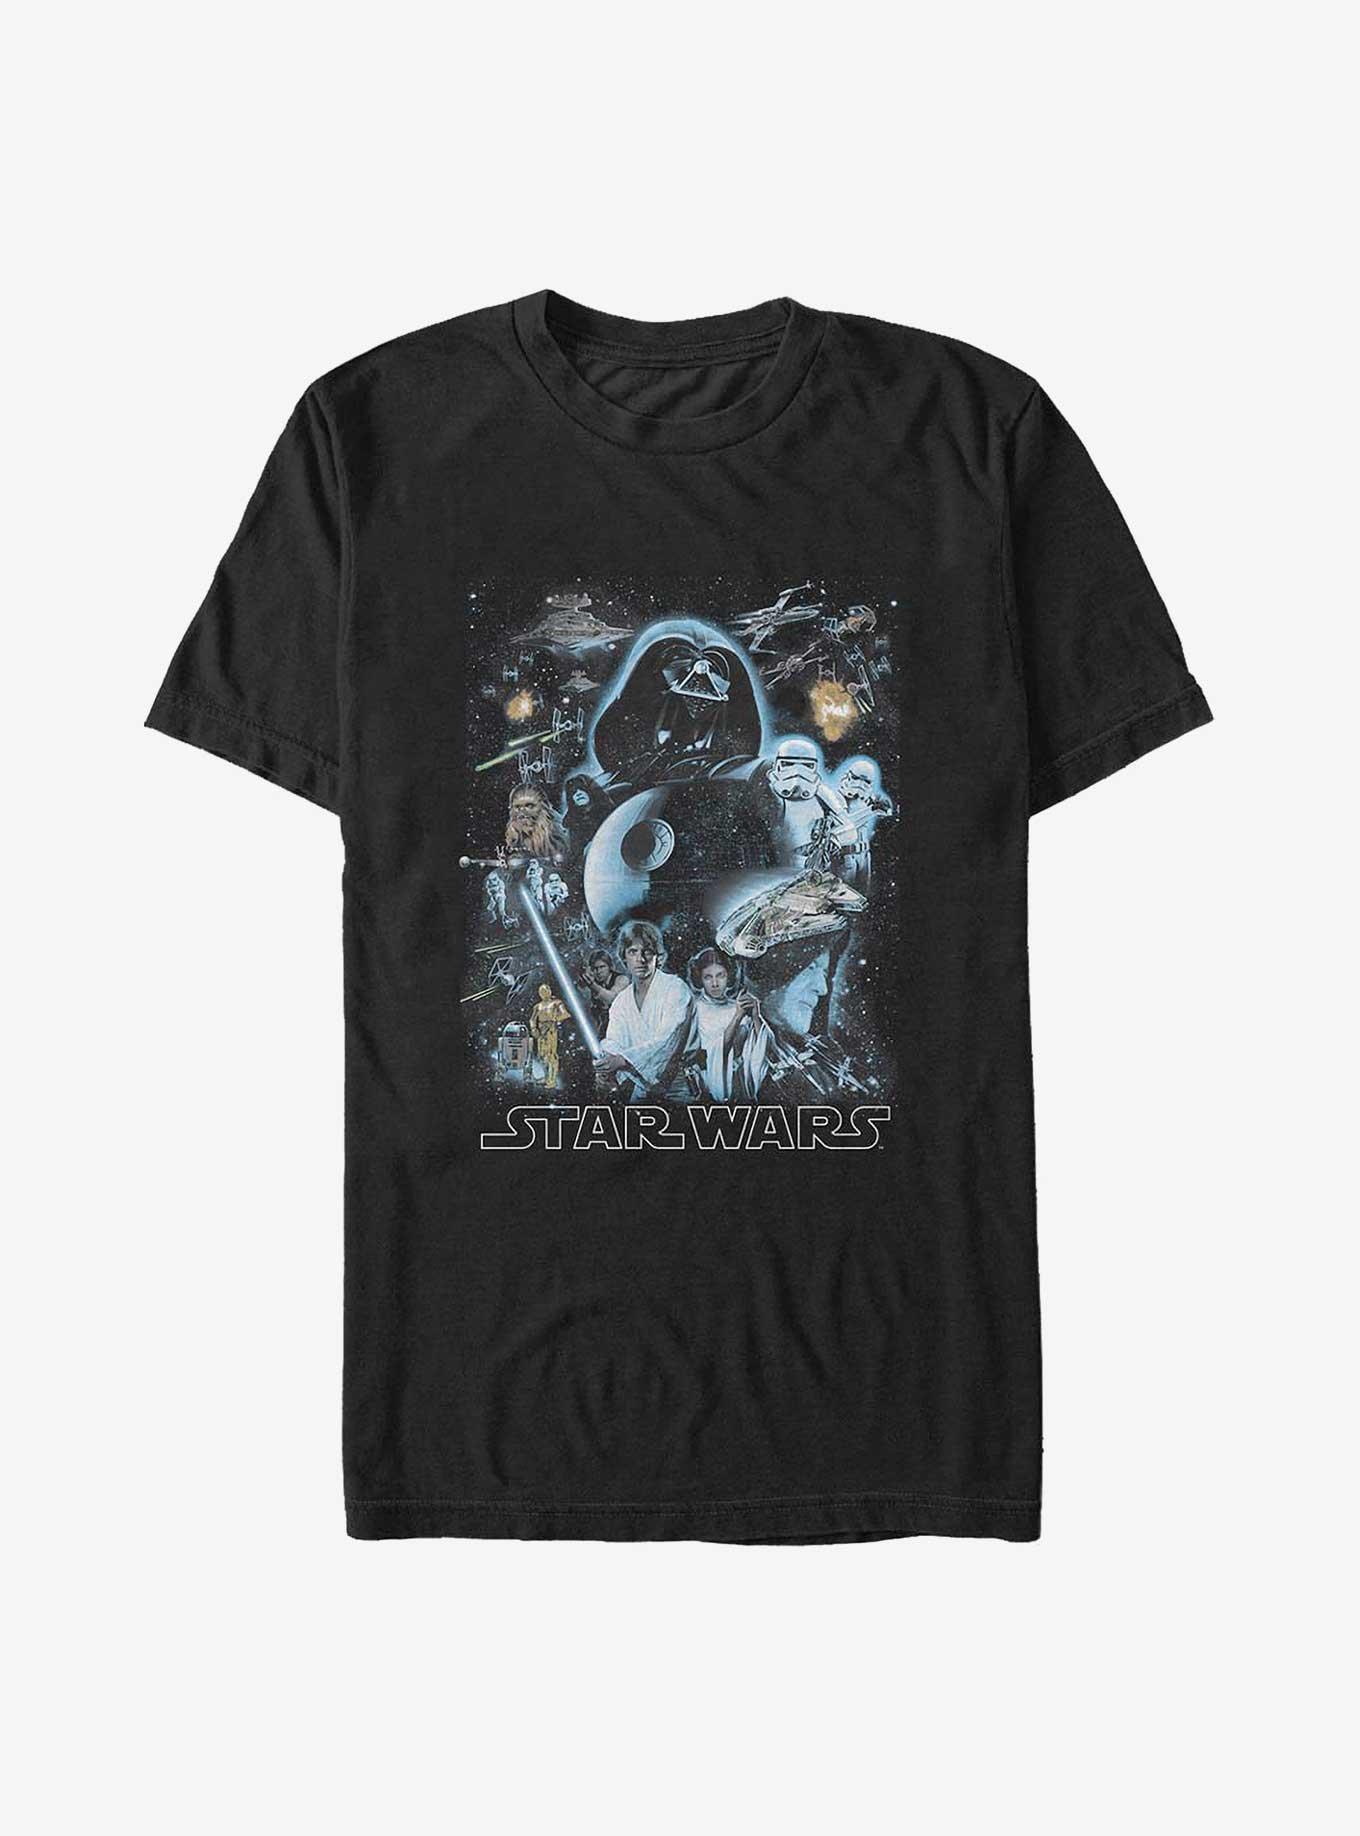 Star Wars Galaxy of Stars Big & Tall T-Shirt